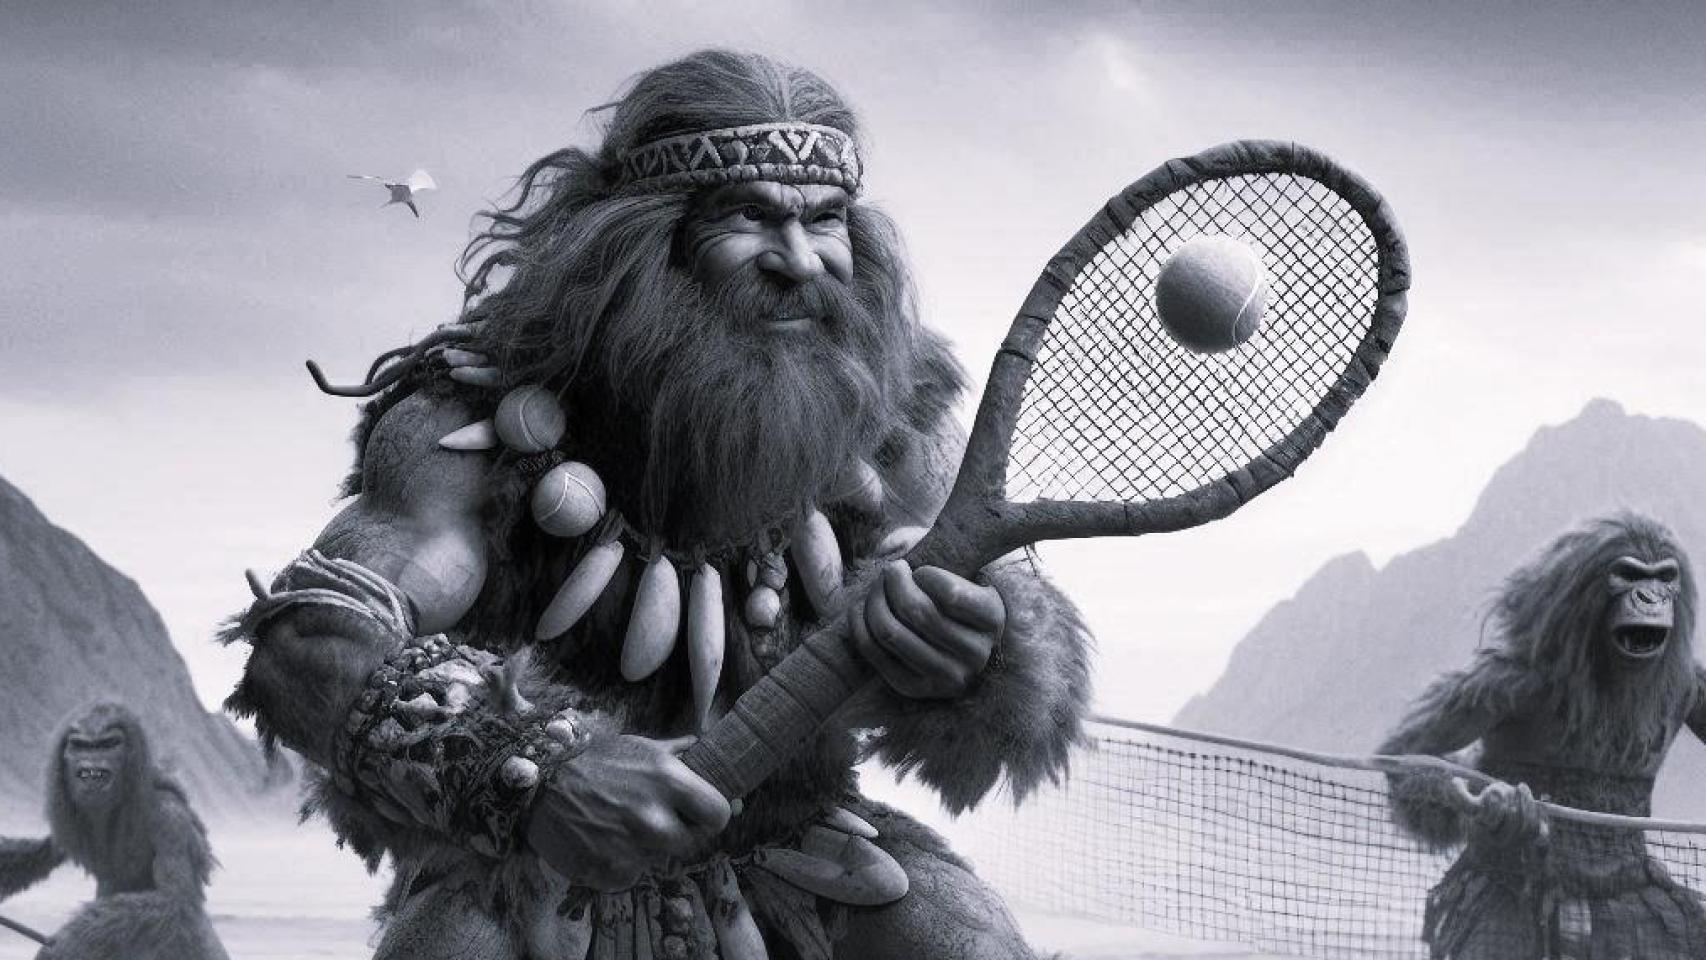 Imagen generada de un hombre de las cavernas jugando al tenis.